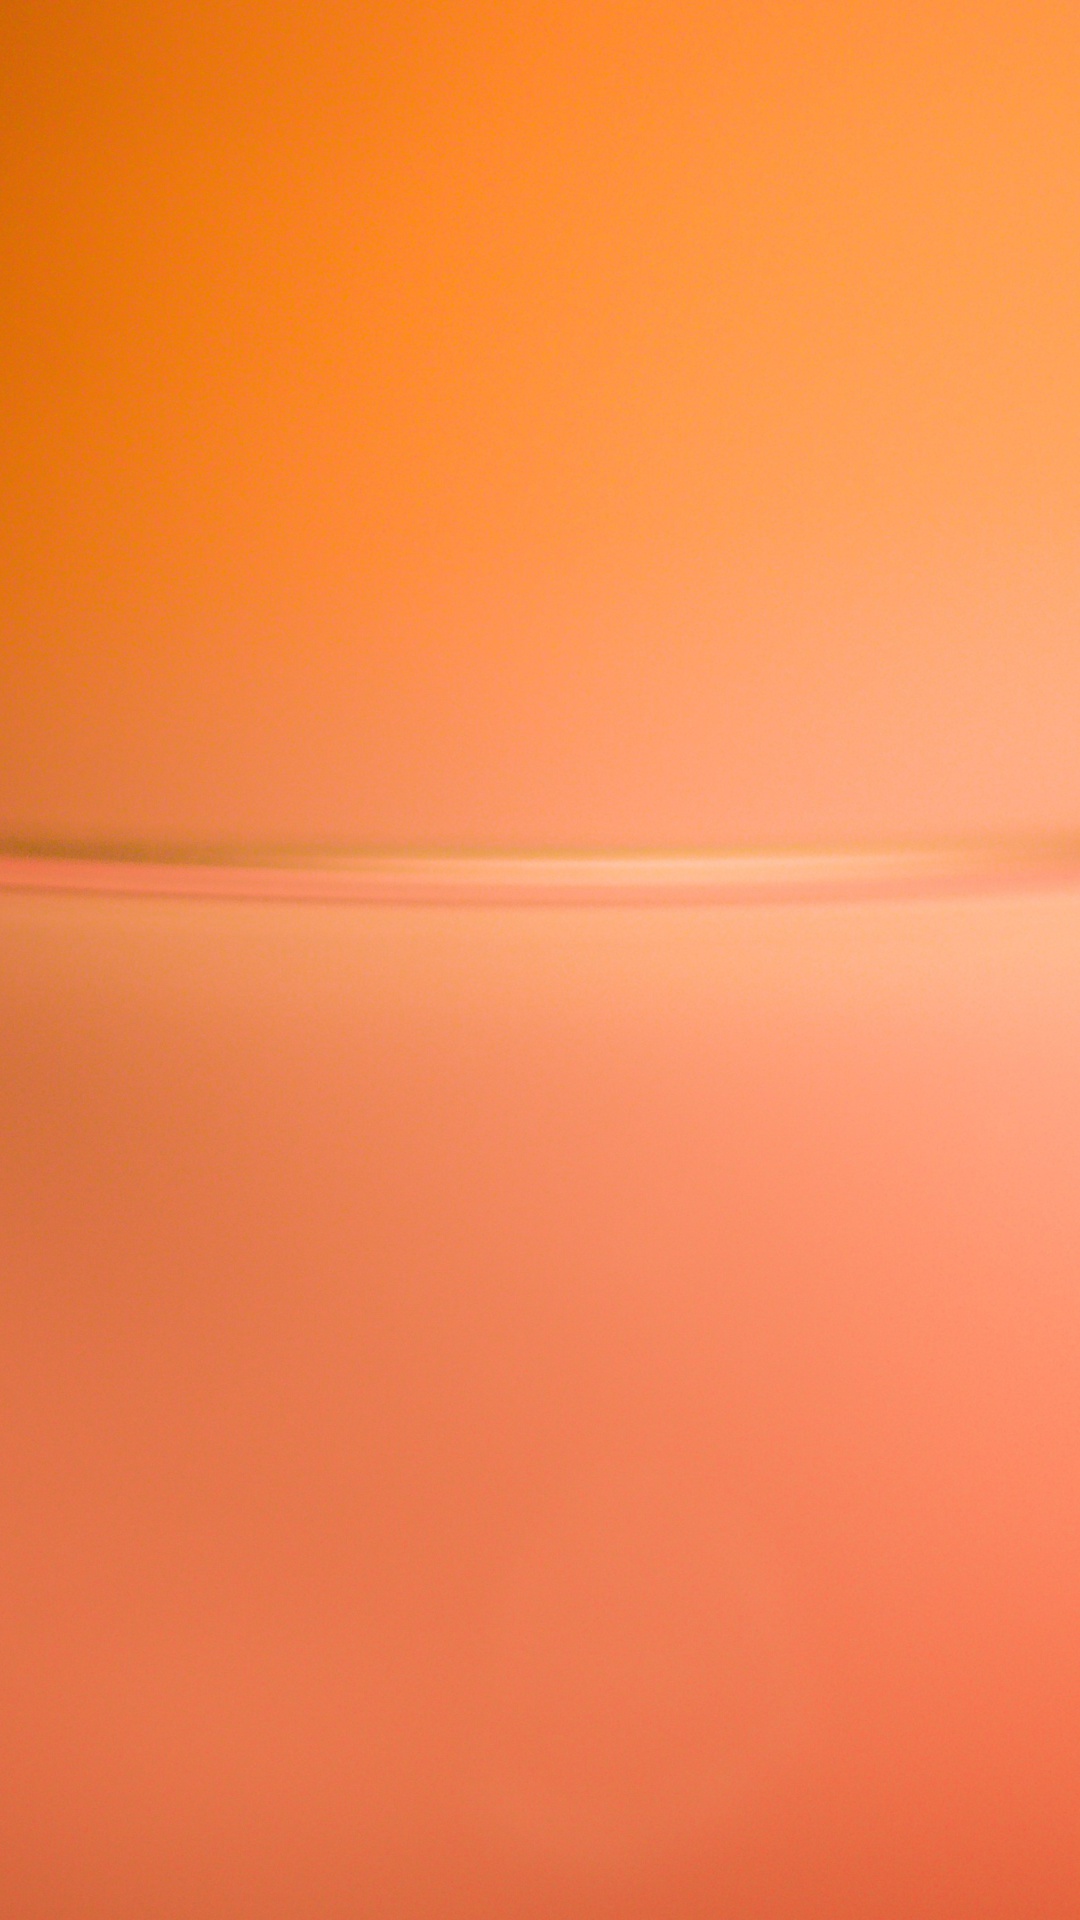 Das Bokeh Glass Orange Texture Wallpaper 1080x1920